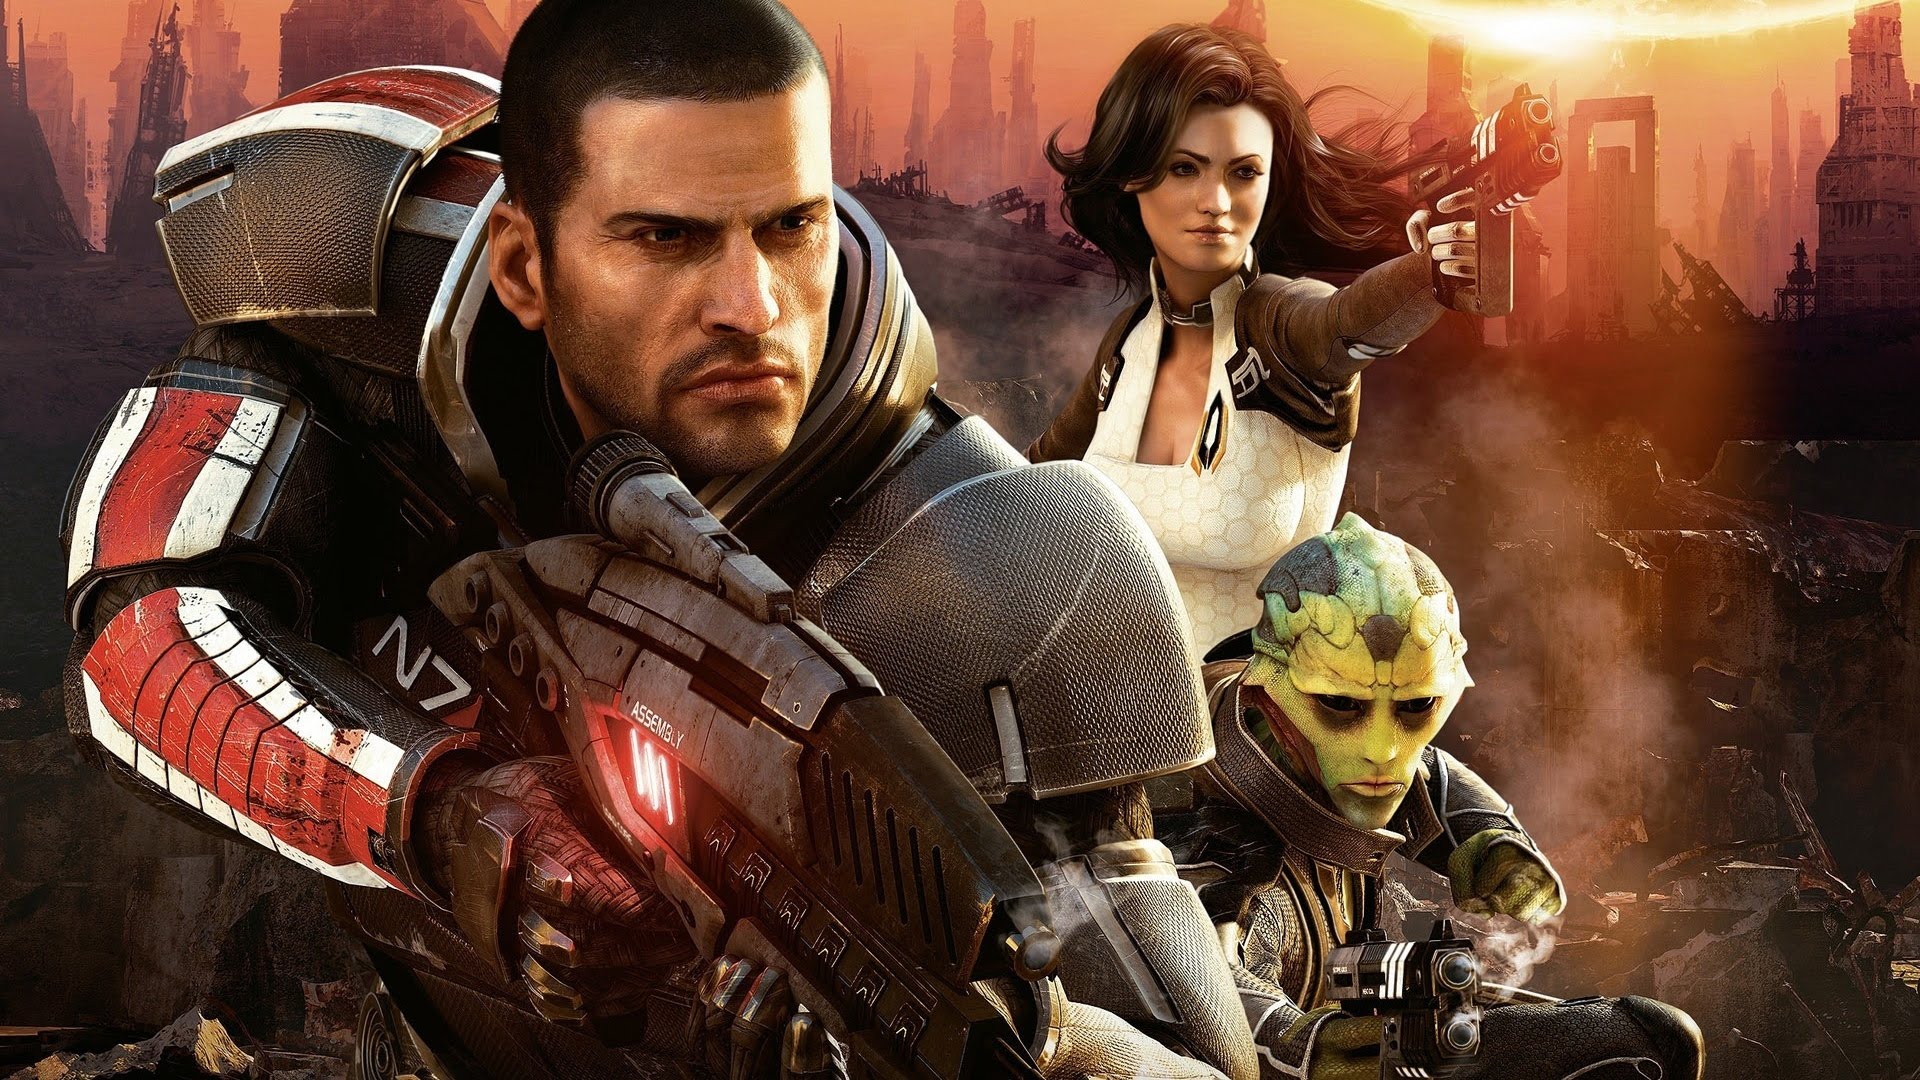 Mass Effect Trilogy Remaster-ийг XNUMX-р сард хийхээр төлөвлөж байгаа ч хойшлогдож магадгүй - цуу яриа